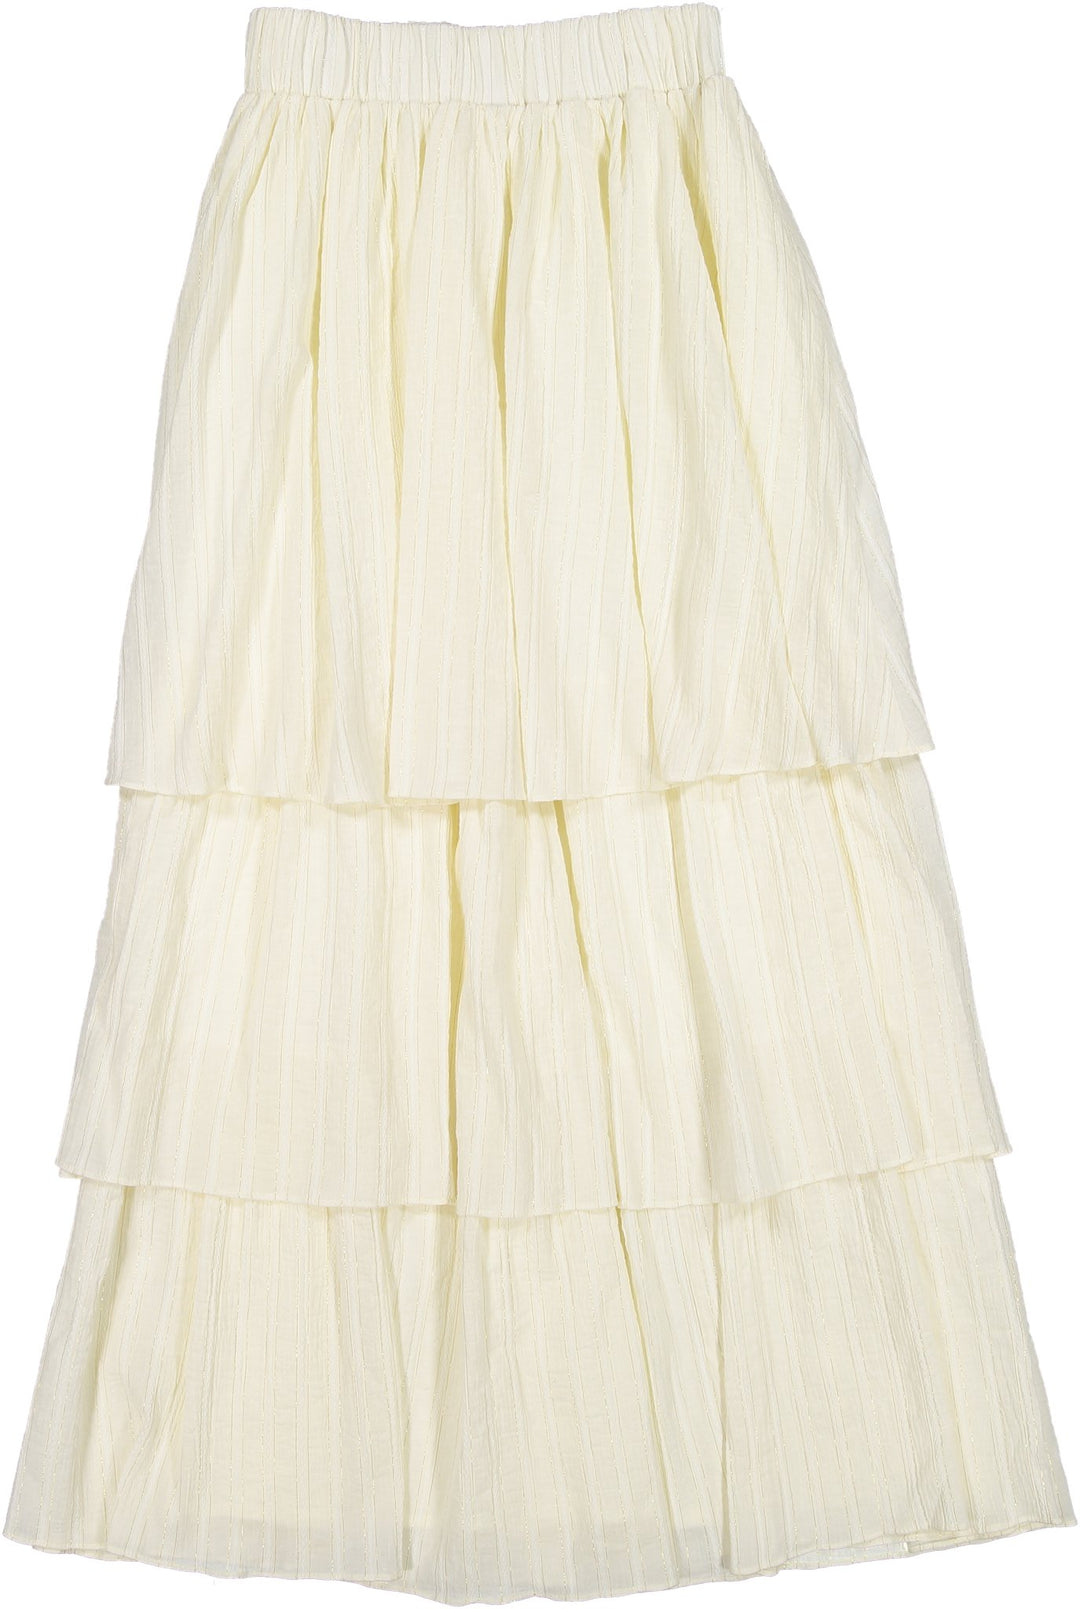 Pin Striped Ruffled Maxi Skirt - Cream - Posh New York